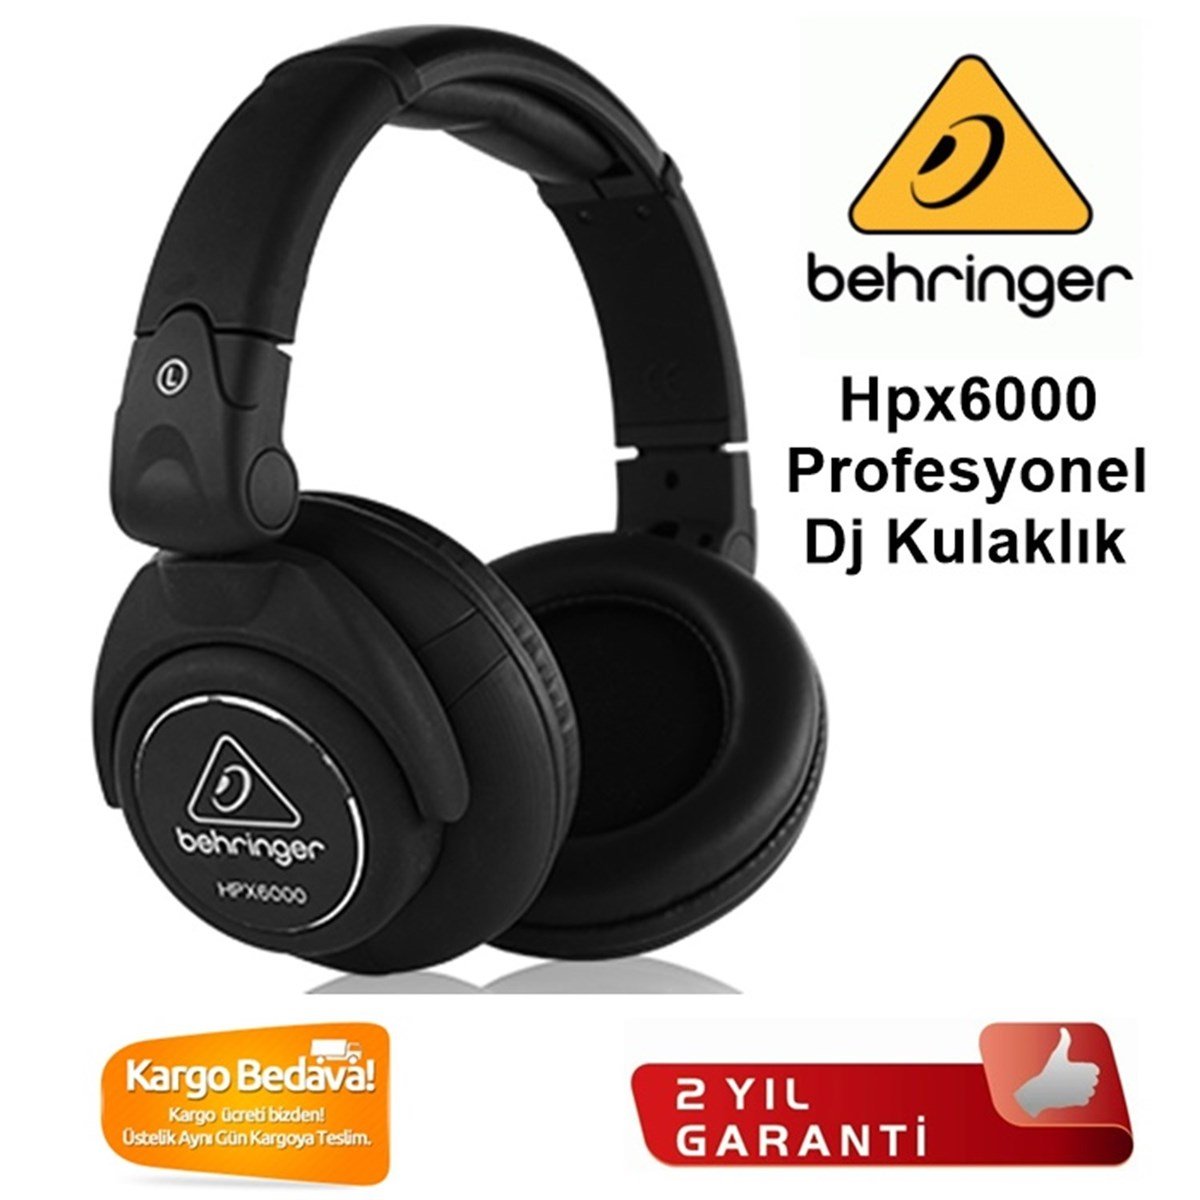 Behringer Hpx6000 Profesyonel DJ Kulaklık en ucuz fiyatları